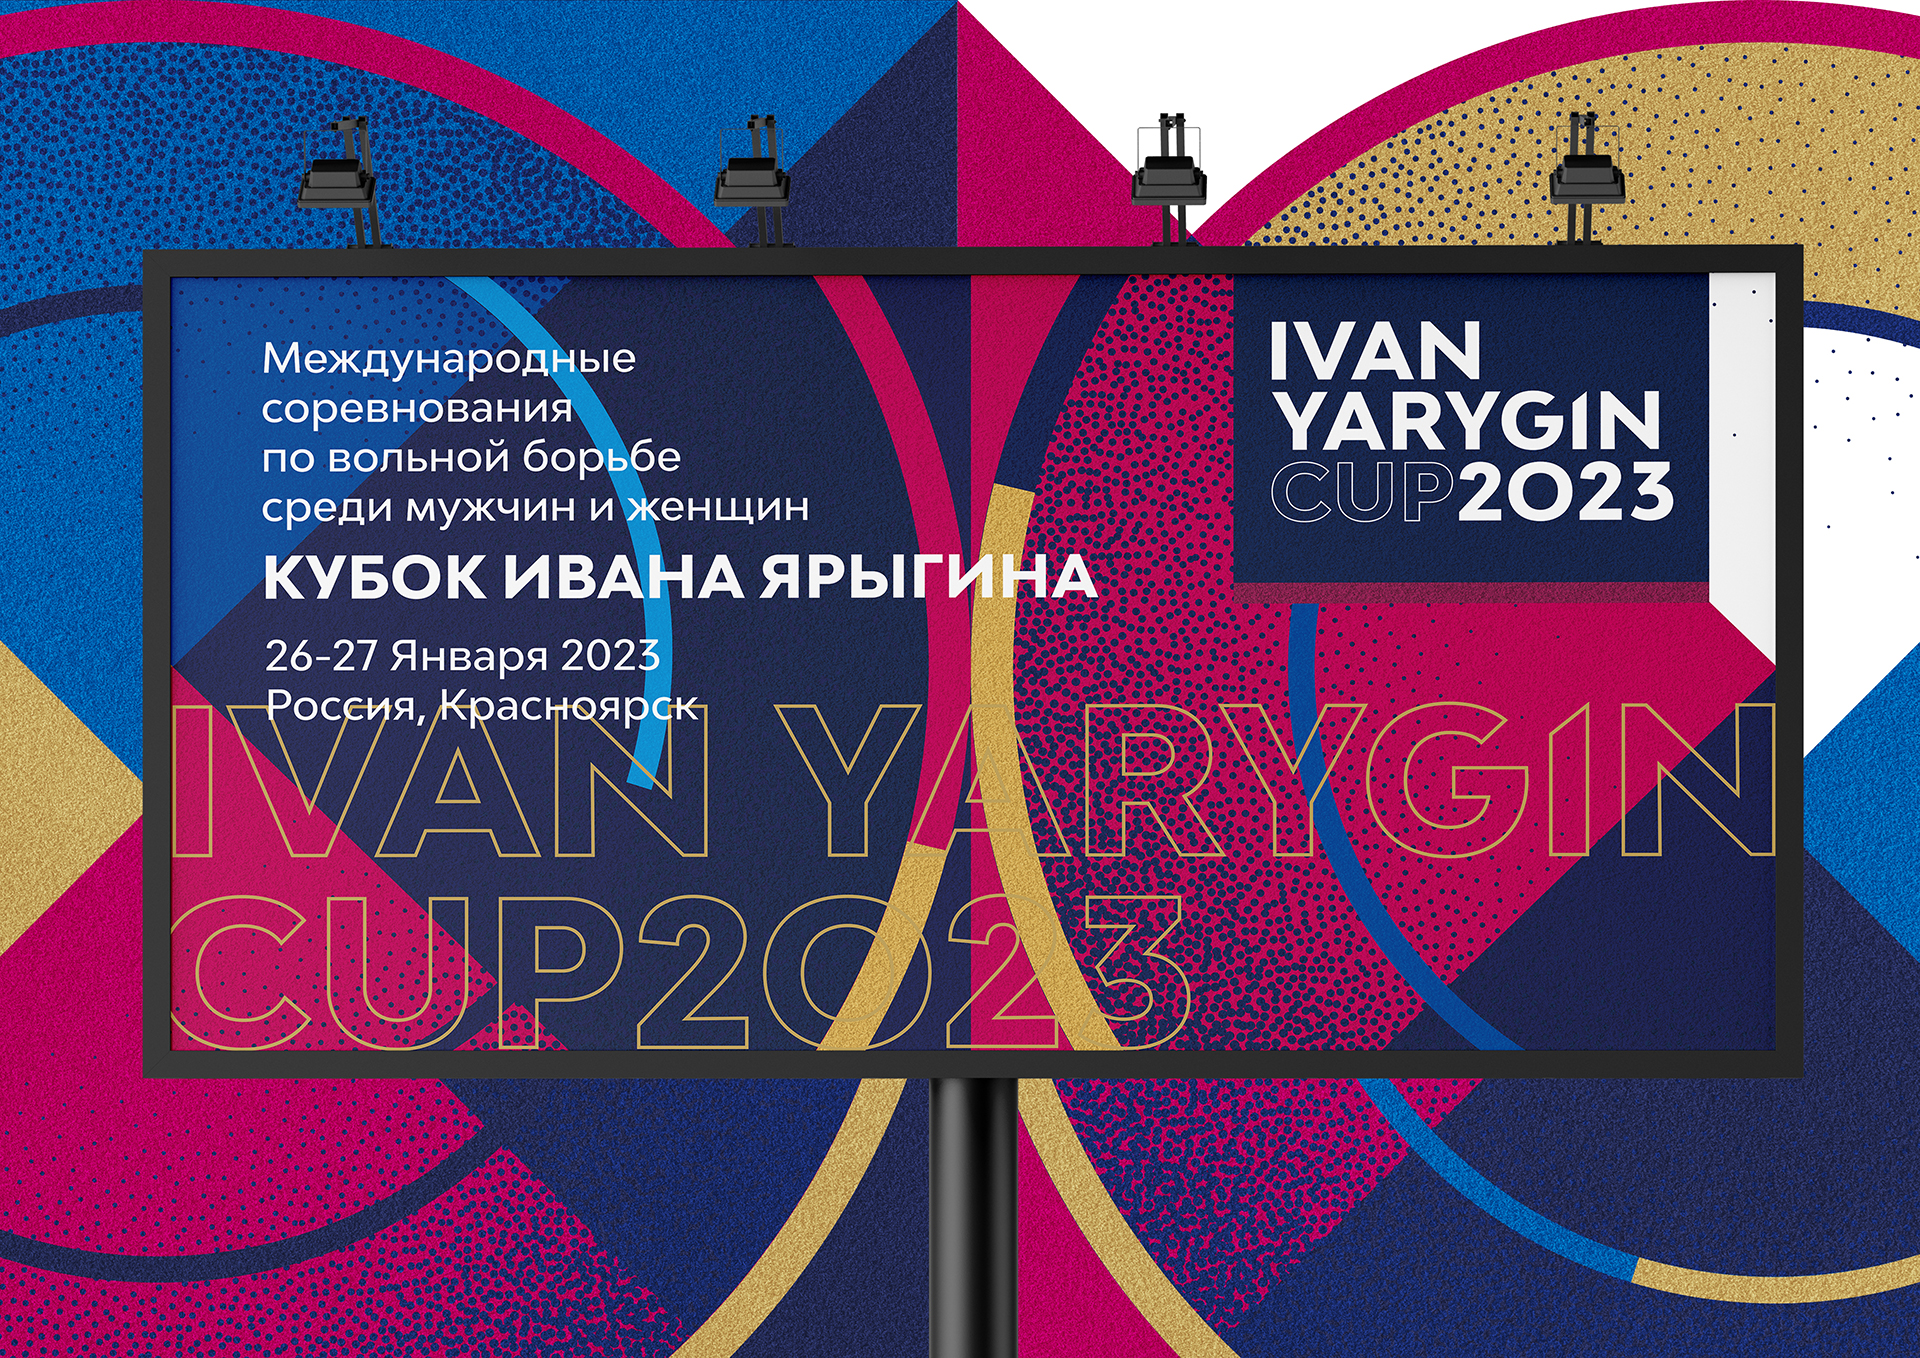 Фирменный стиль Кубка Ивана Ярыгина 2023 — проект Лаборатории развития